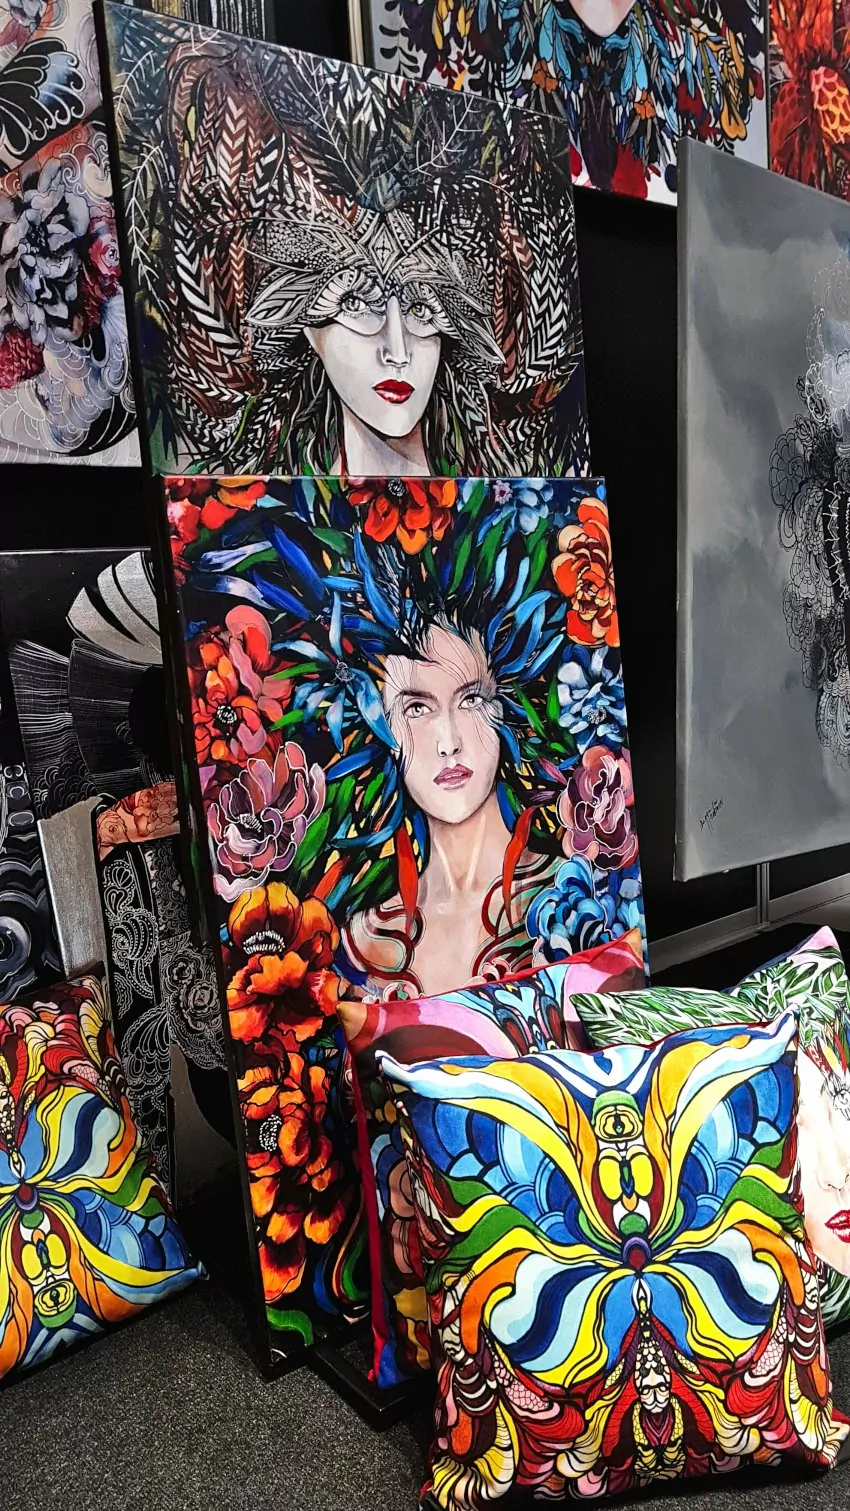 Targi Gift&Deco, obraz malarki Maggie Piu, obrazy z kobietami otoczone kolorowymi piórami i kwiatami, na podłodze położone kolorowe poduszki